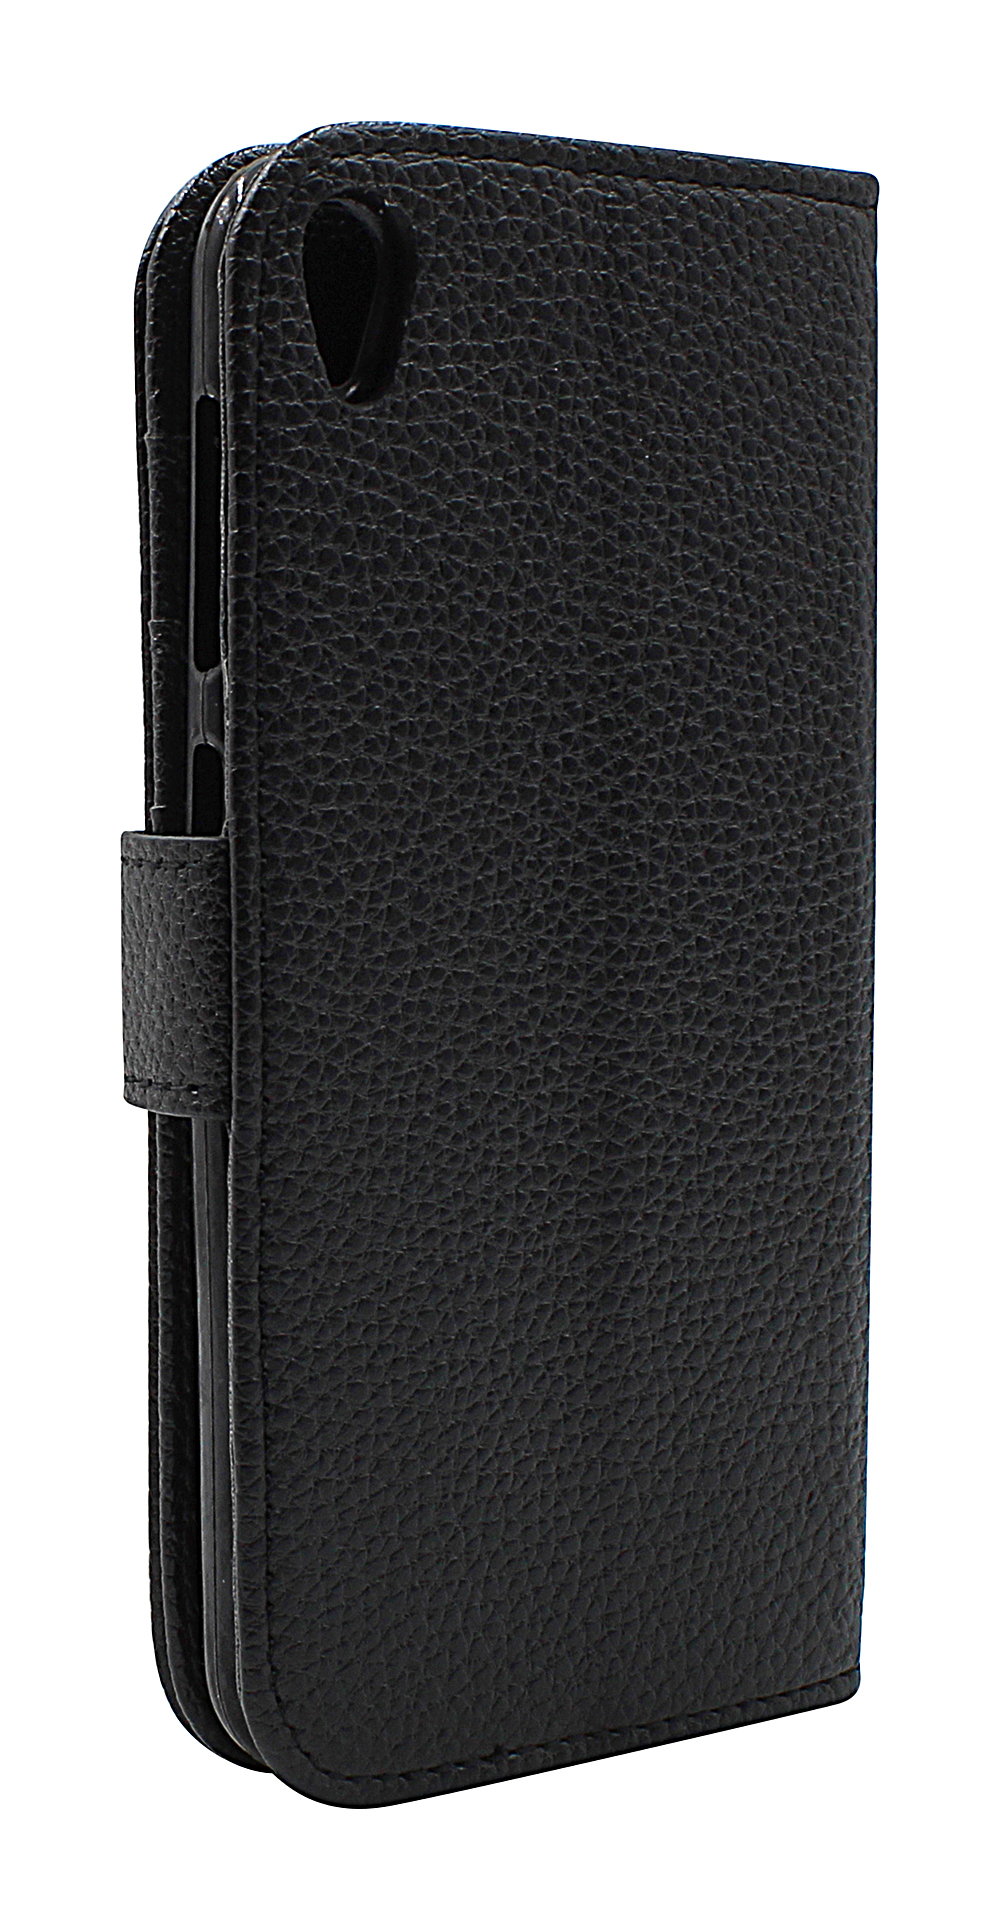 billigamobilskydd.seNew Standcase Wallet Asus ZenFone Live (ZB501KL)